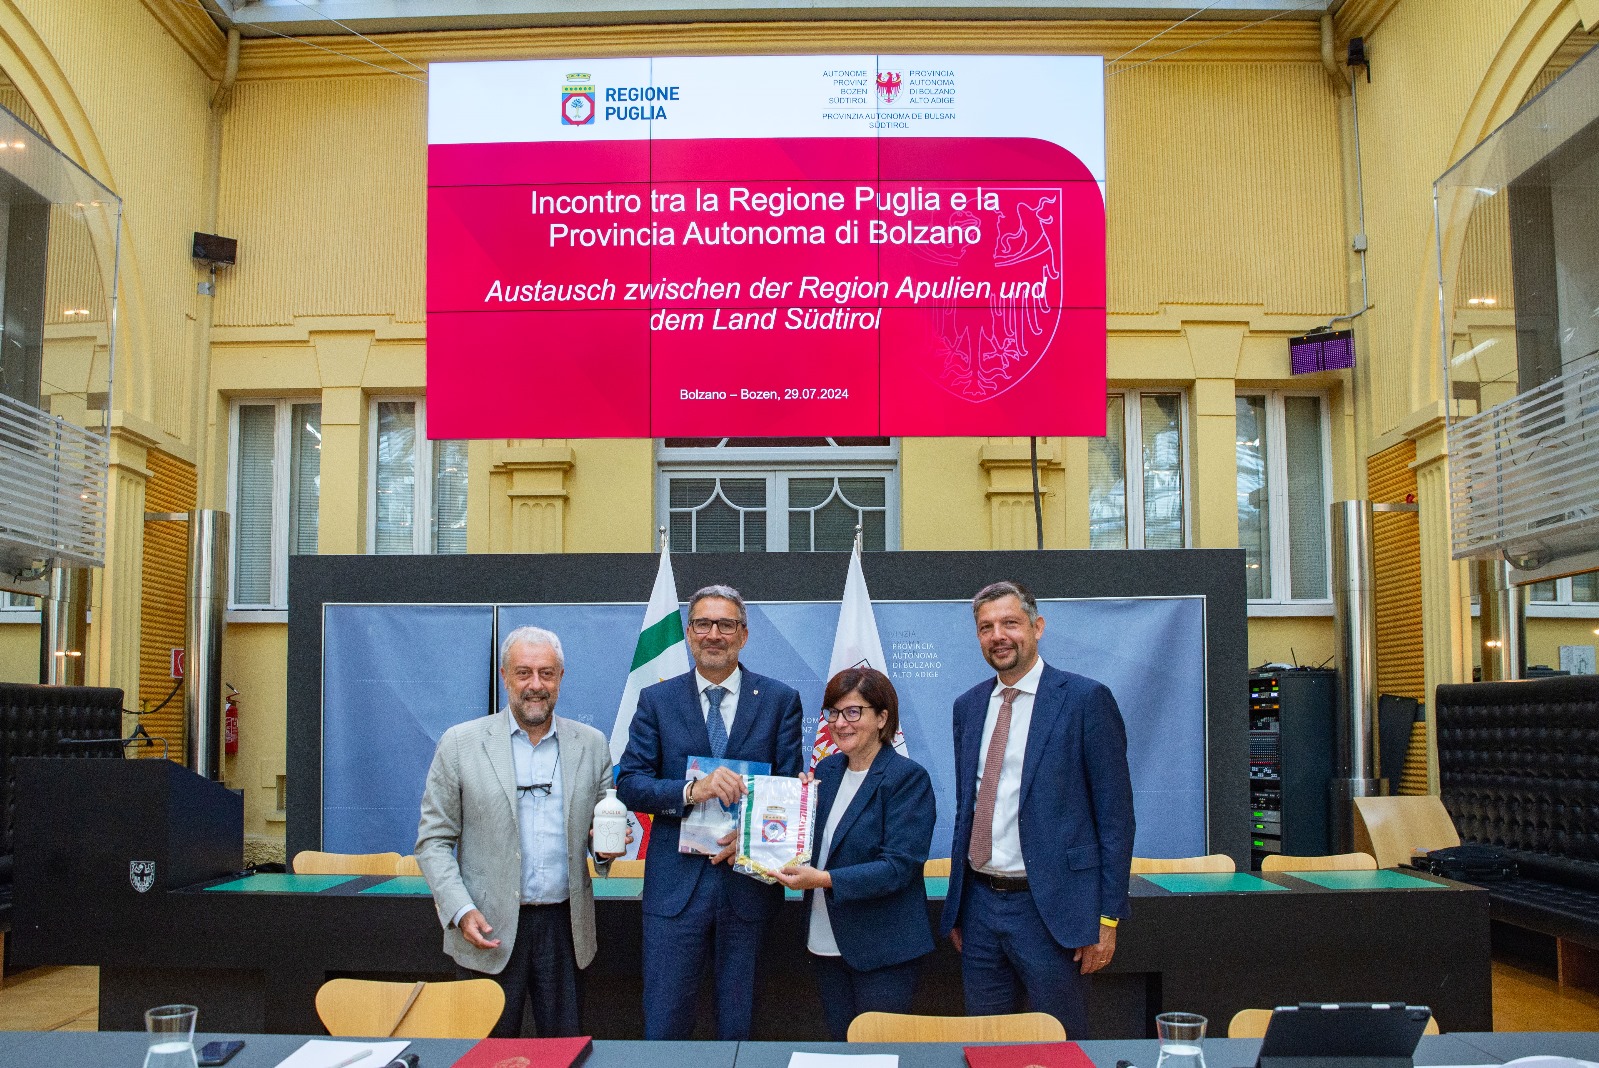 Galleria Puglia e Alto Adige firmano un accordo per la promozione dell’uso dell’idrogeno nel settore trasporti e della transizione ecologica - Diapositiva 2 di 9